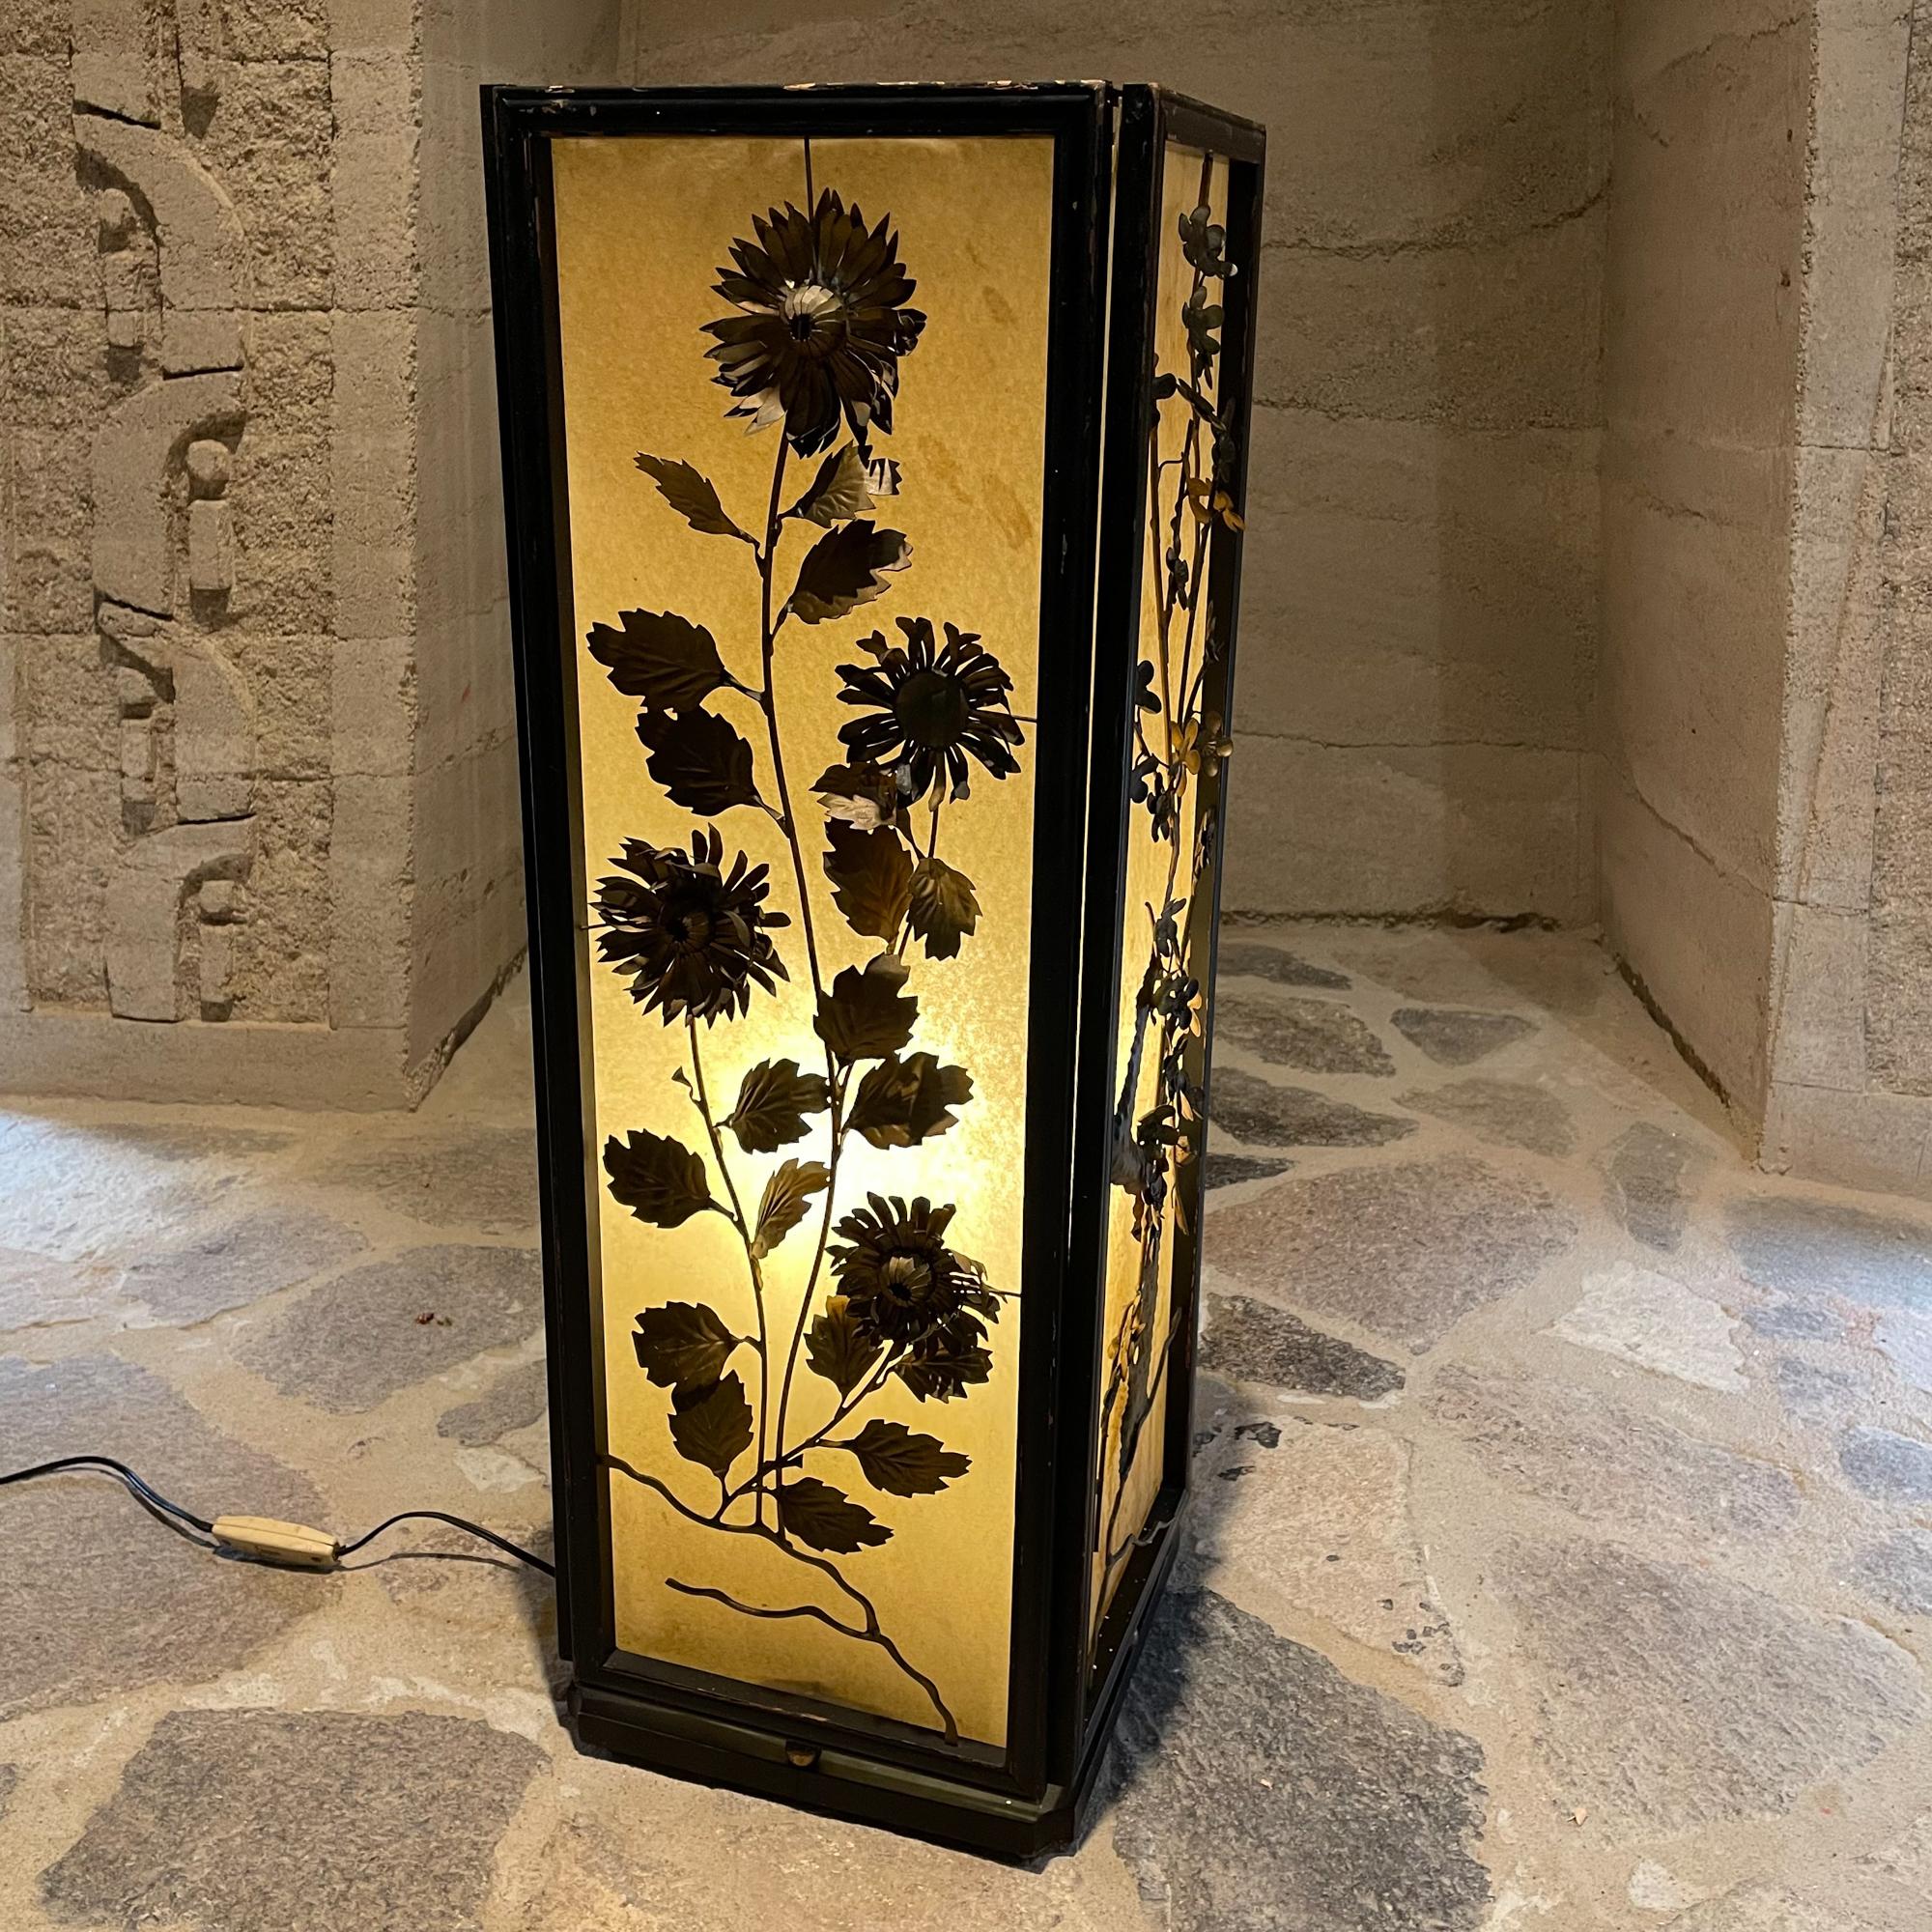 1960er Jahre Regency Modern: Japanische Laternenlampe mit vier Seiten, jede mit einem dekorativen Blumenmuster aus Messing. Außen gelblicher Kunststofflaminat-Ton. Holzrahmen
Jedes Paneeldesign ist einzigartig. Siehe Bilder!
Unmarkiert.
Maße: